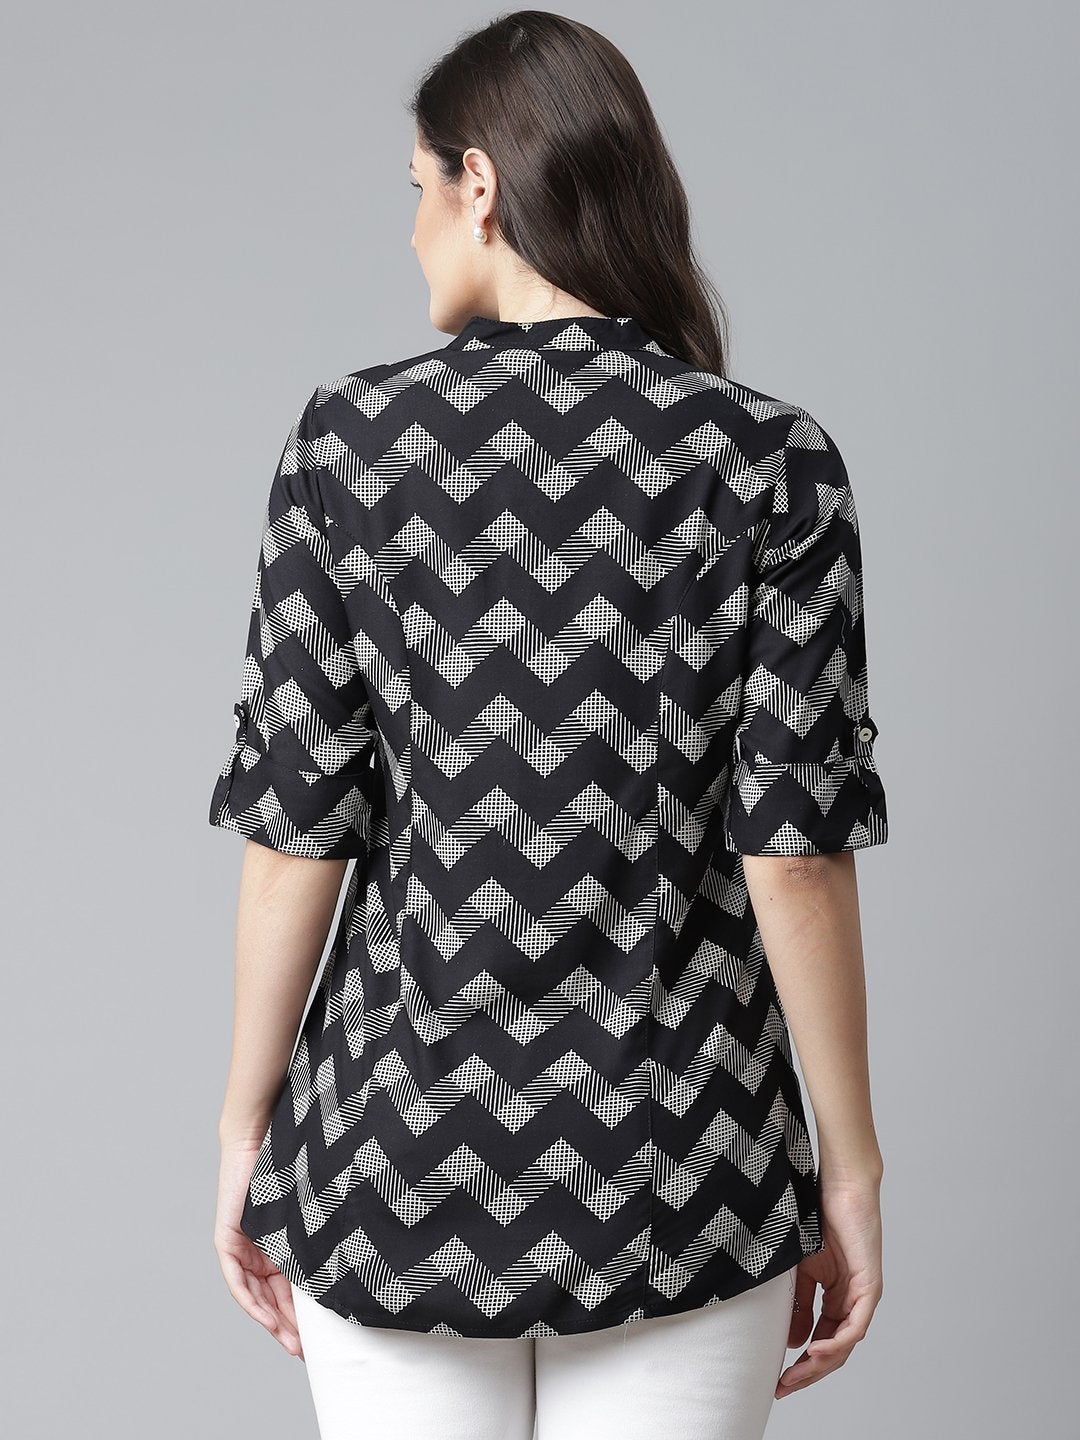 Women's Black Rayon Zigzag Print Top - Divena